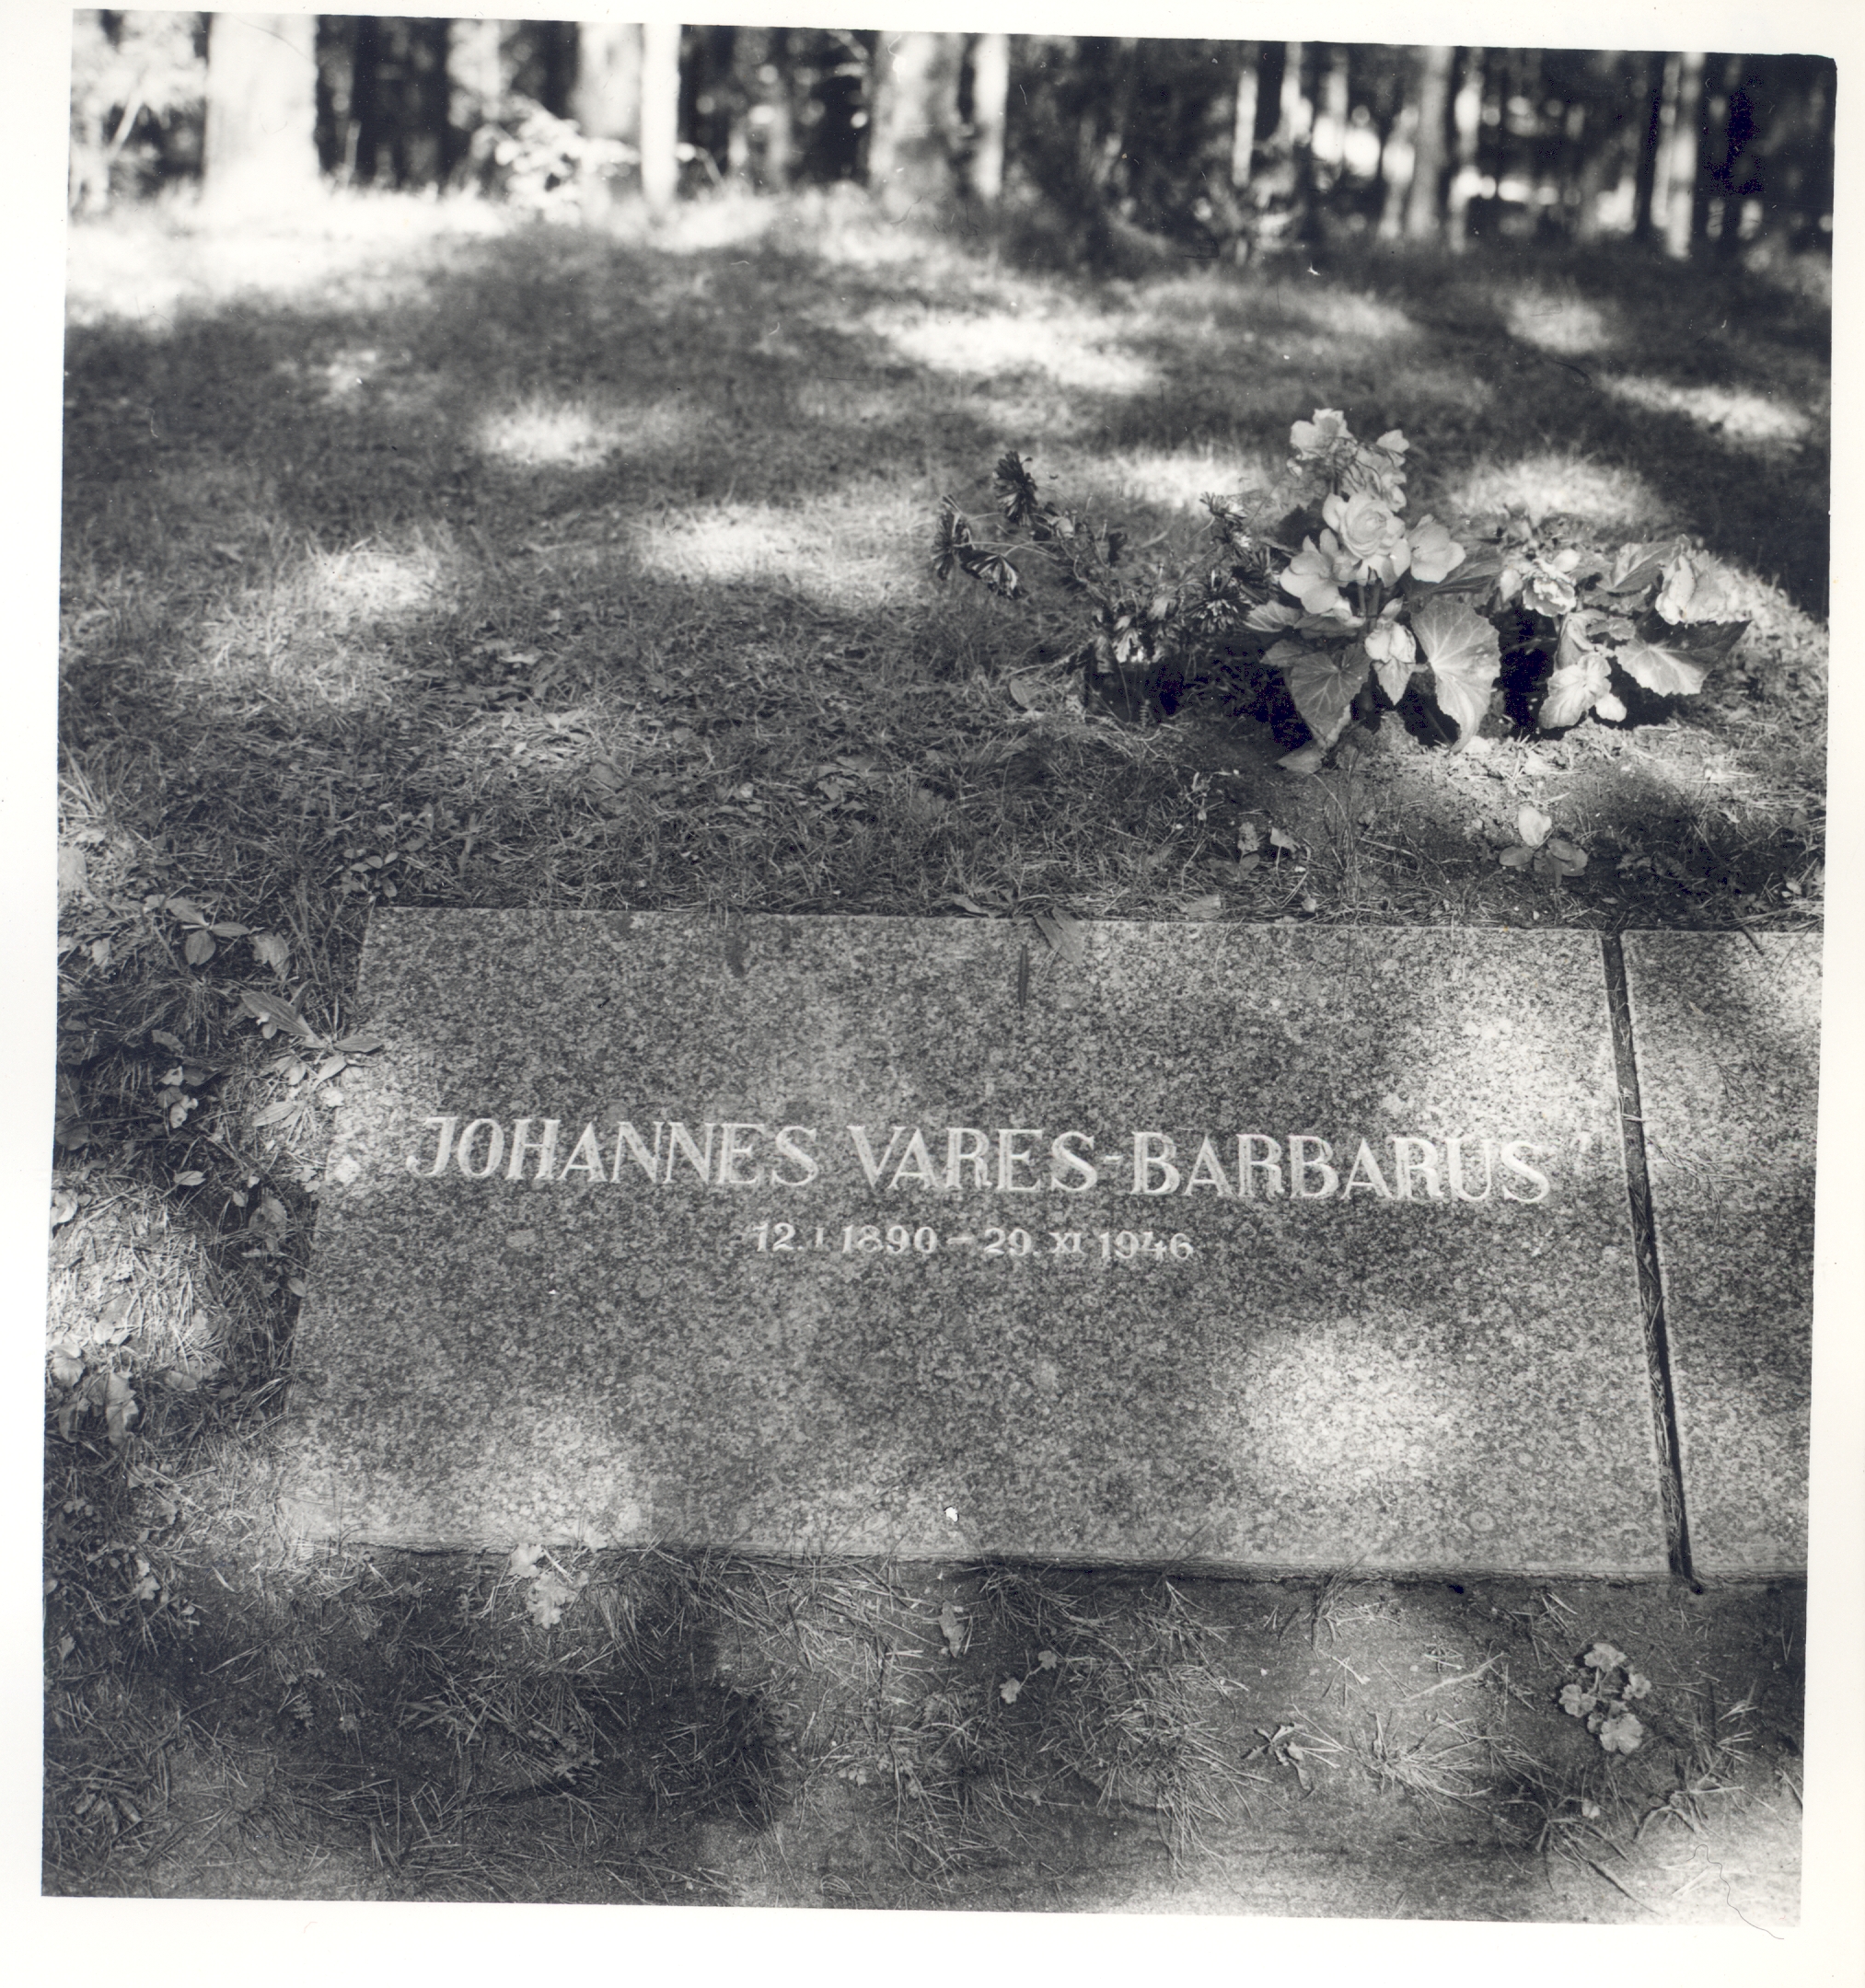 J. Vares-Barbarus grave